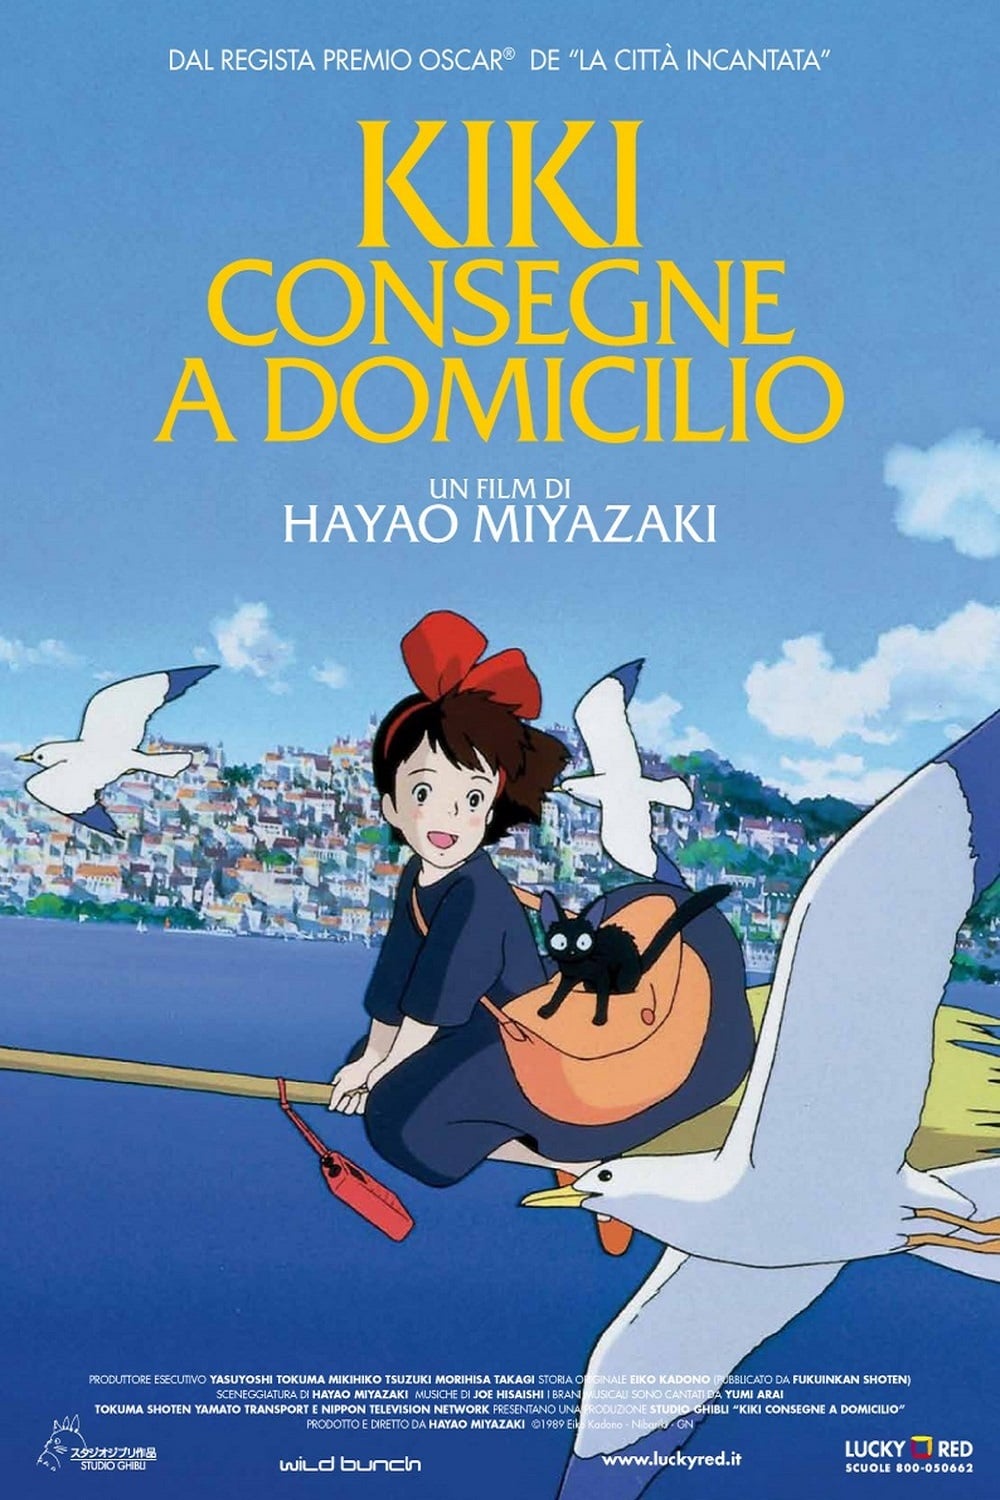 Poster for the movie "Kiki - Consegne a domicilio"